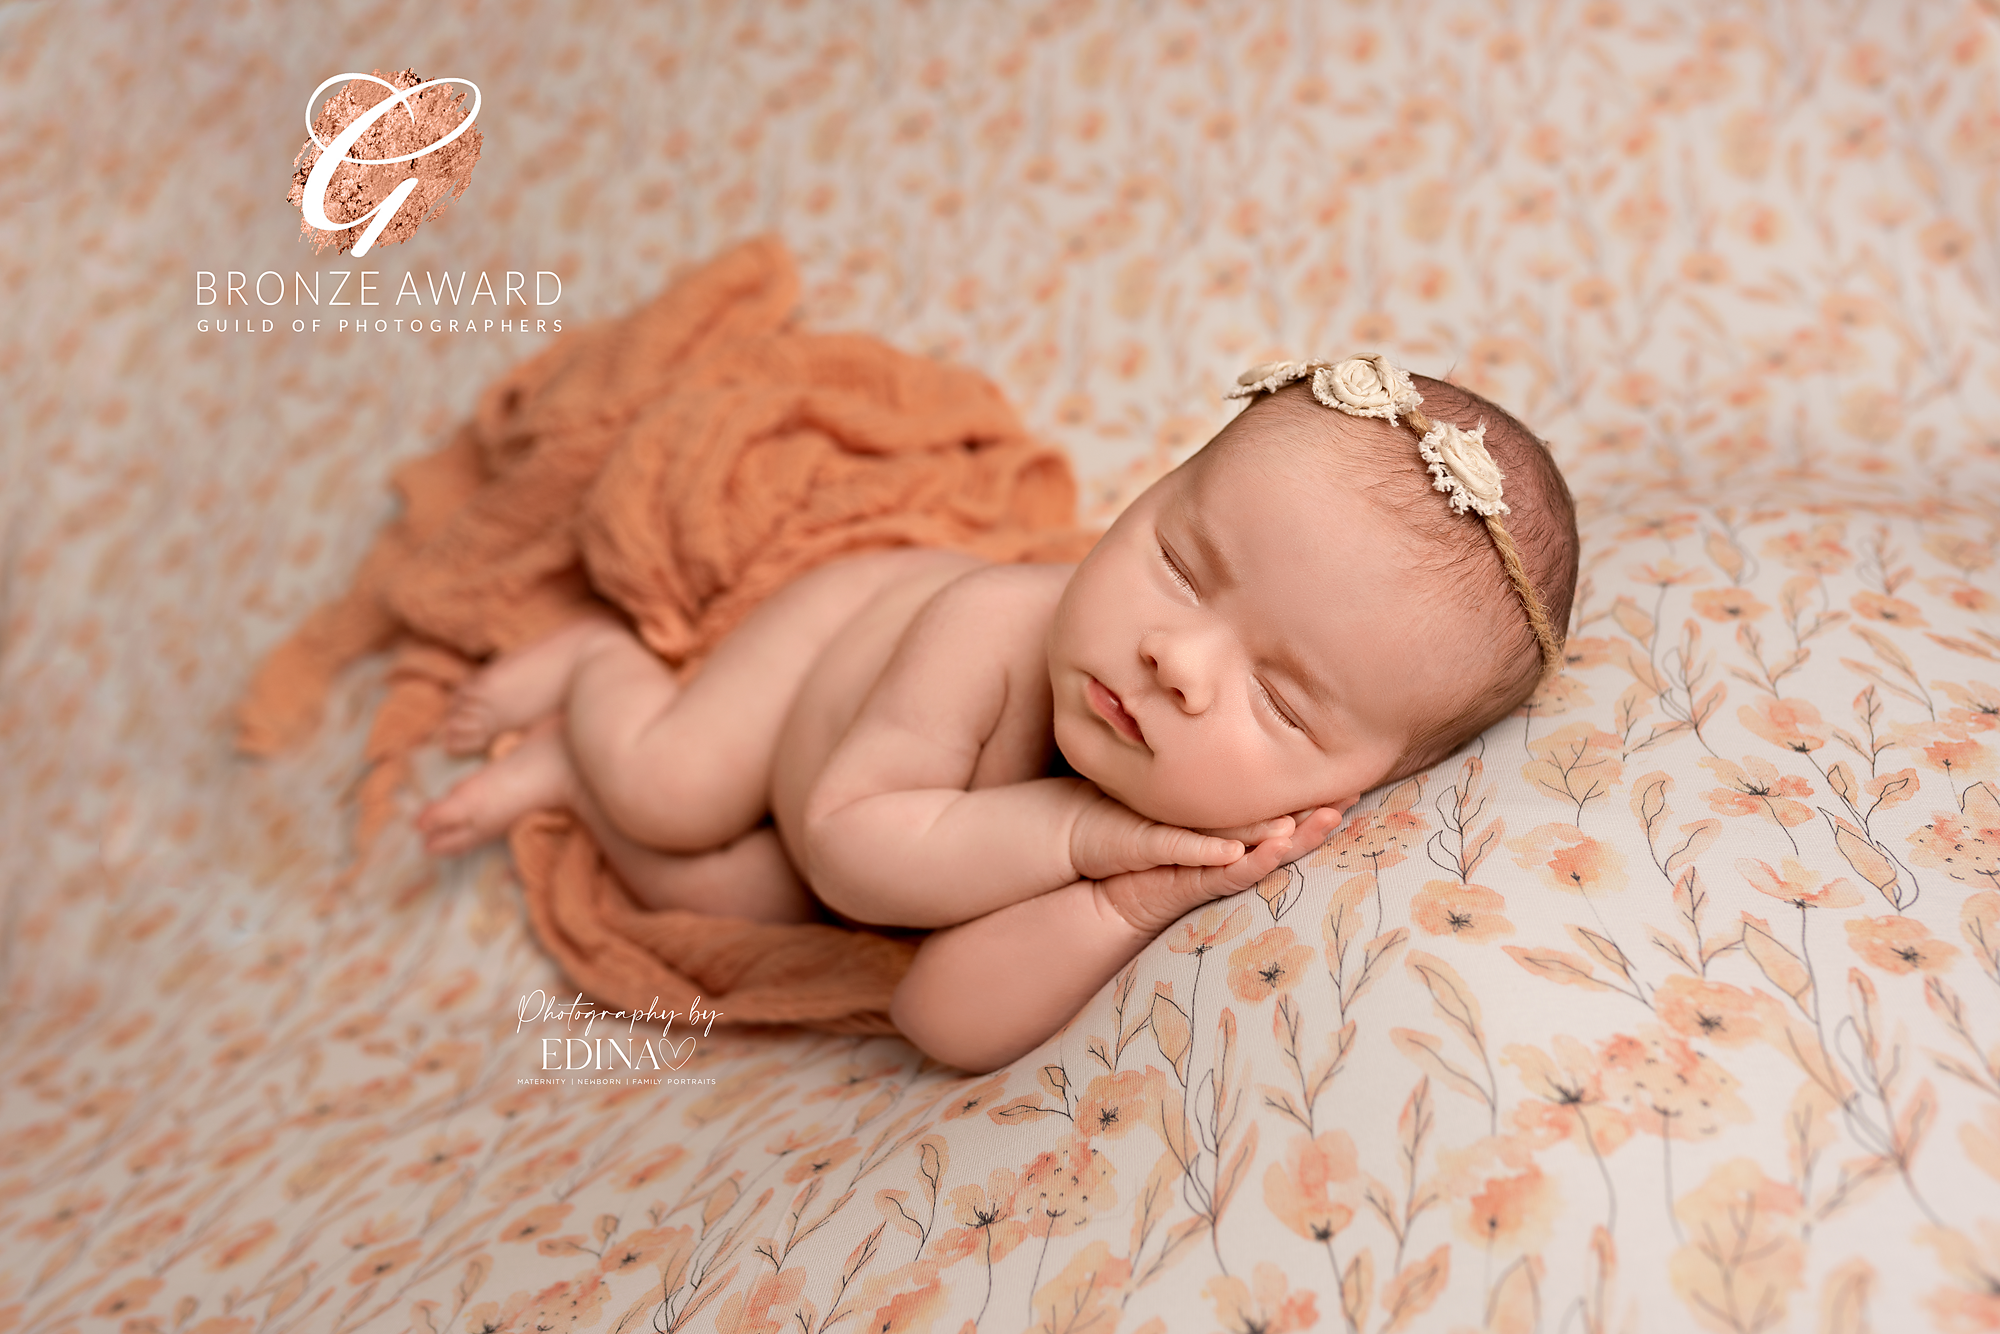 award winning newborn photo by Photography by Edina